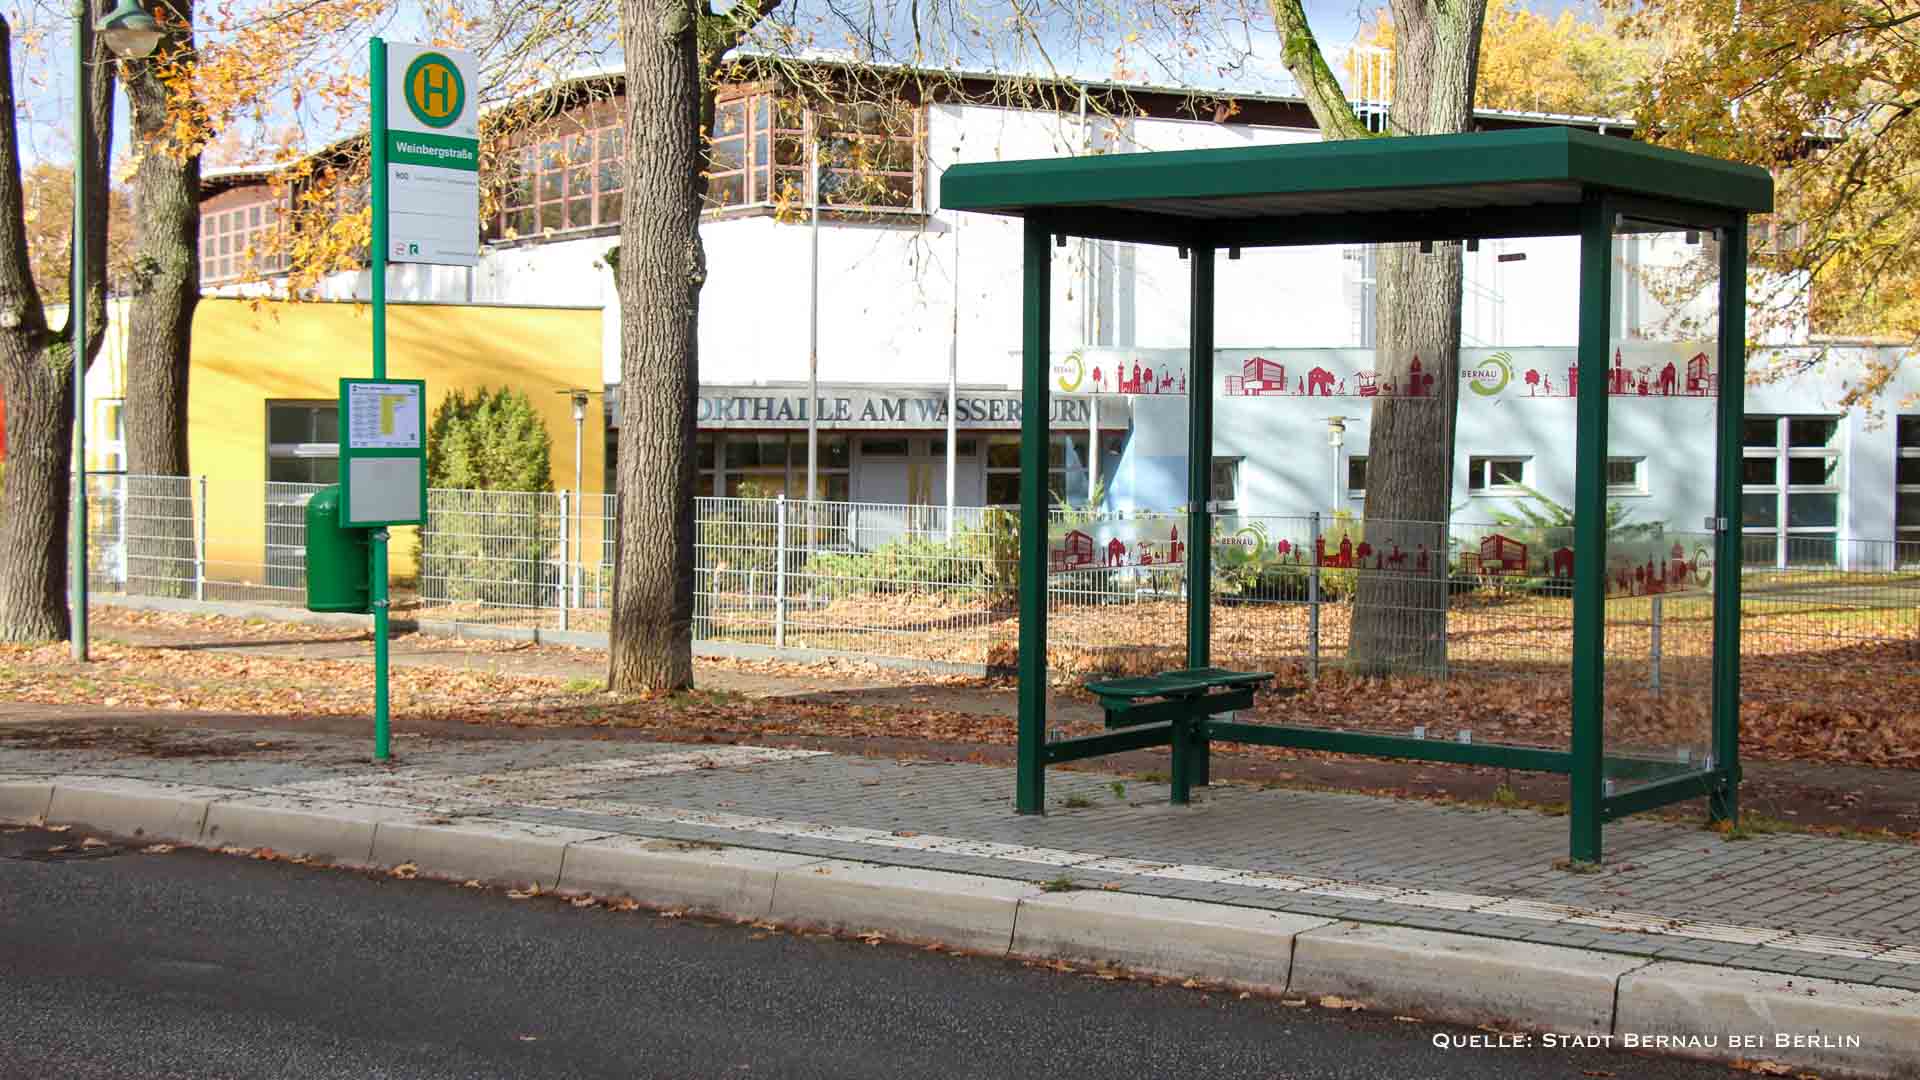 Städtische Bushaltestellen mit Silhouette der Stadt Bernau beklebt